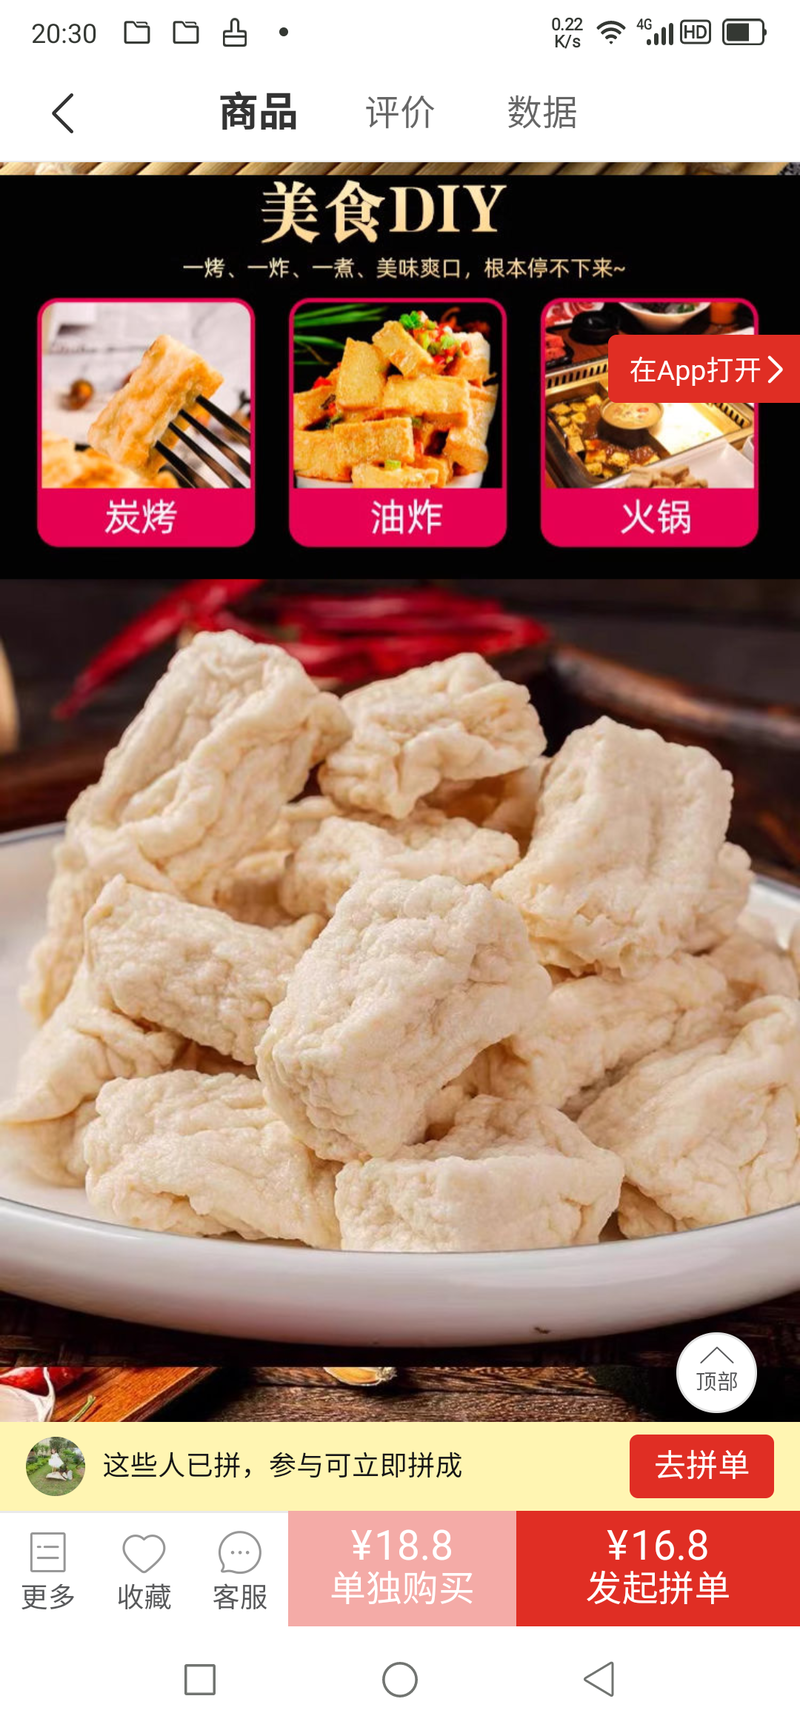 黄金豆腐木棉豆腐传统新工艺，新世记美食，欢迎采购合作